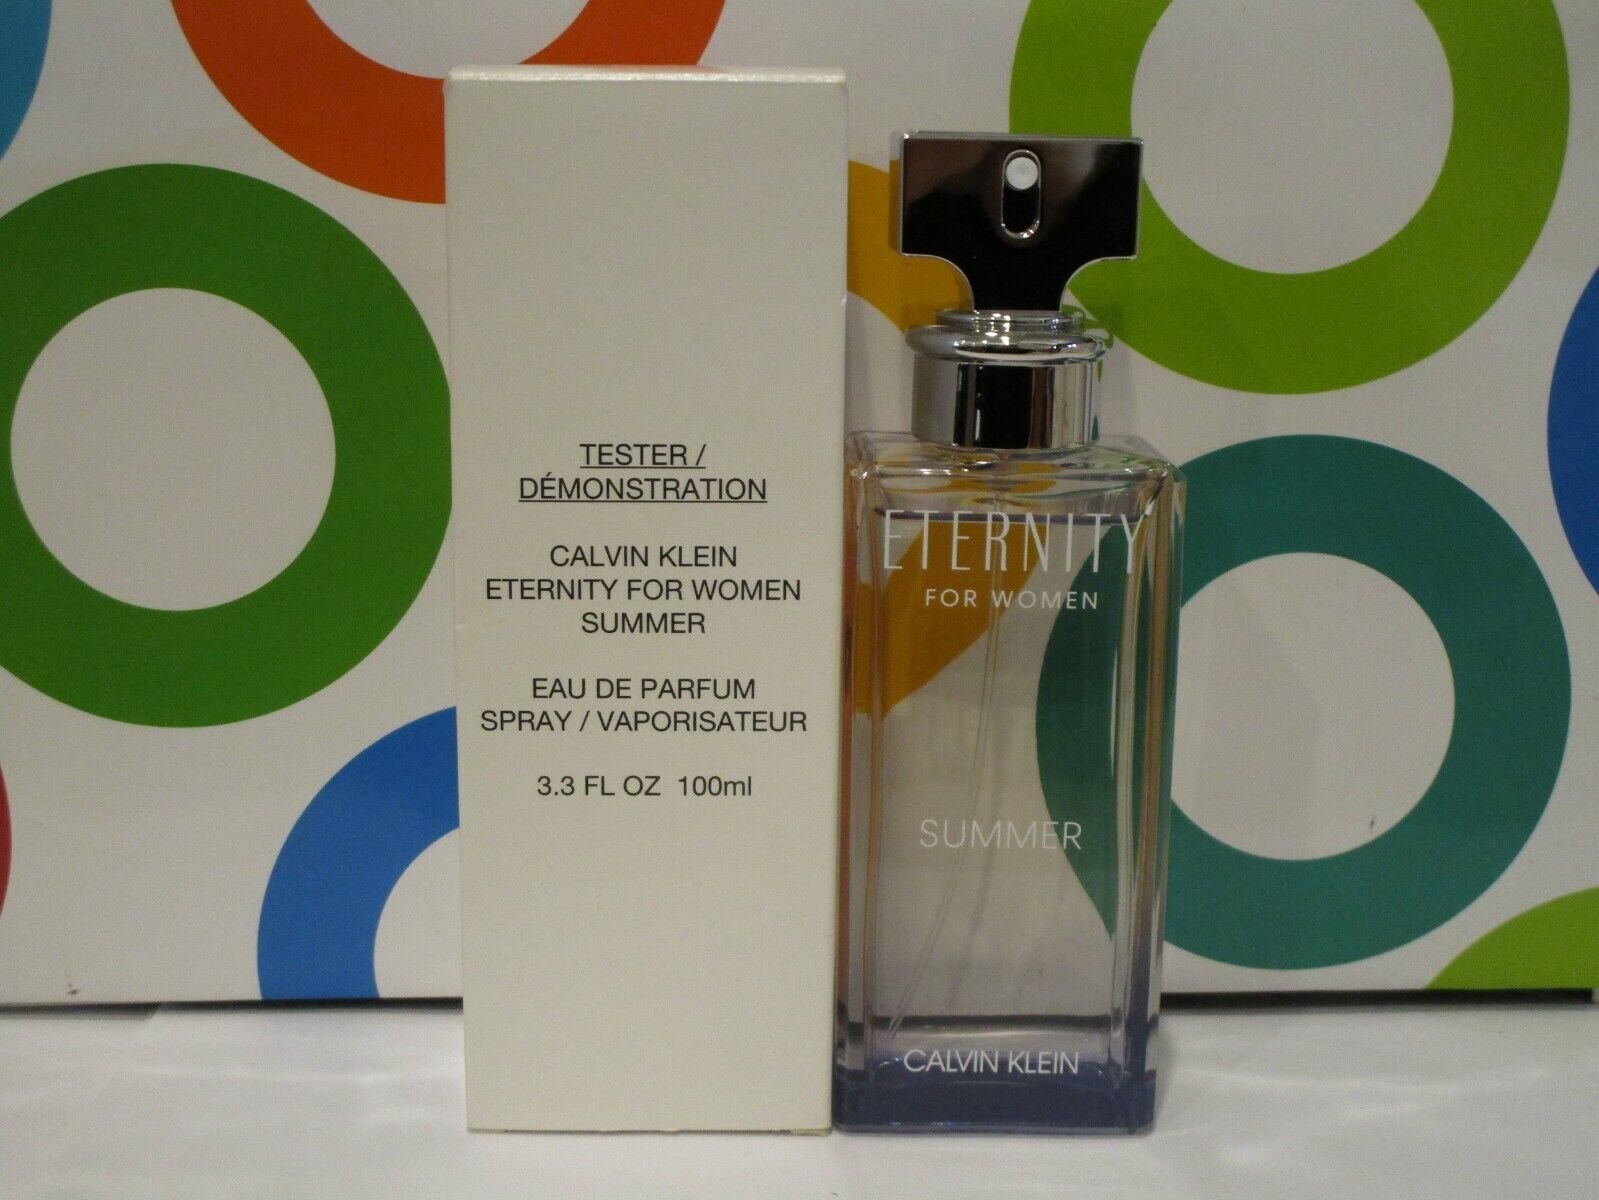 Calvin Klein Eternity Summer Daze For Women Eau De Parfum 100ml Tester at Ratans Online Shop - Perfumes Wholesale and Retailer Fragrance